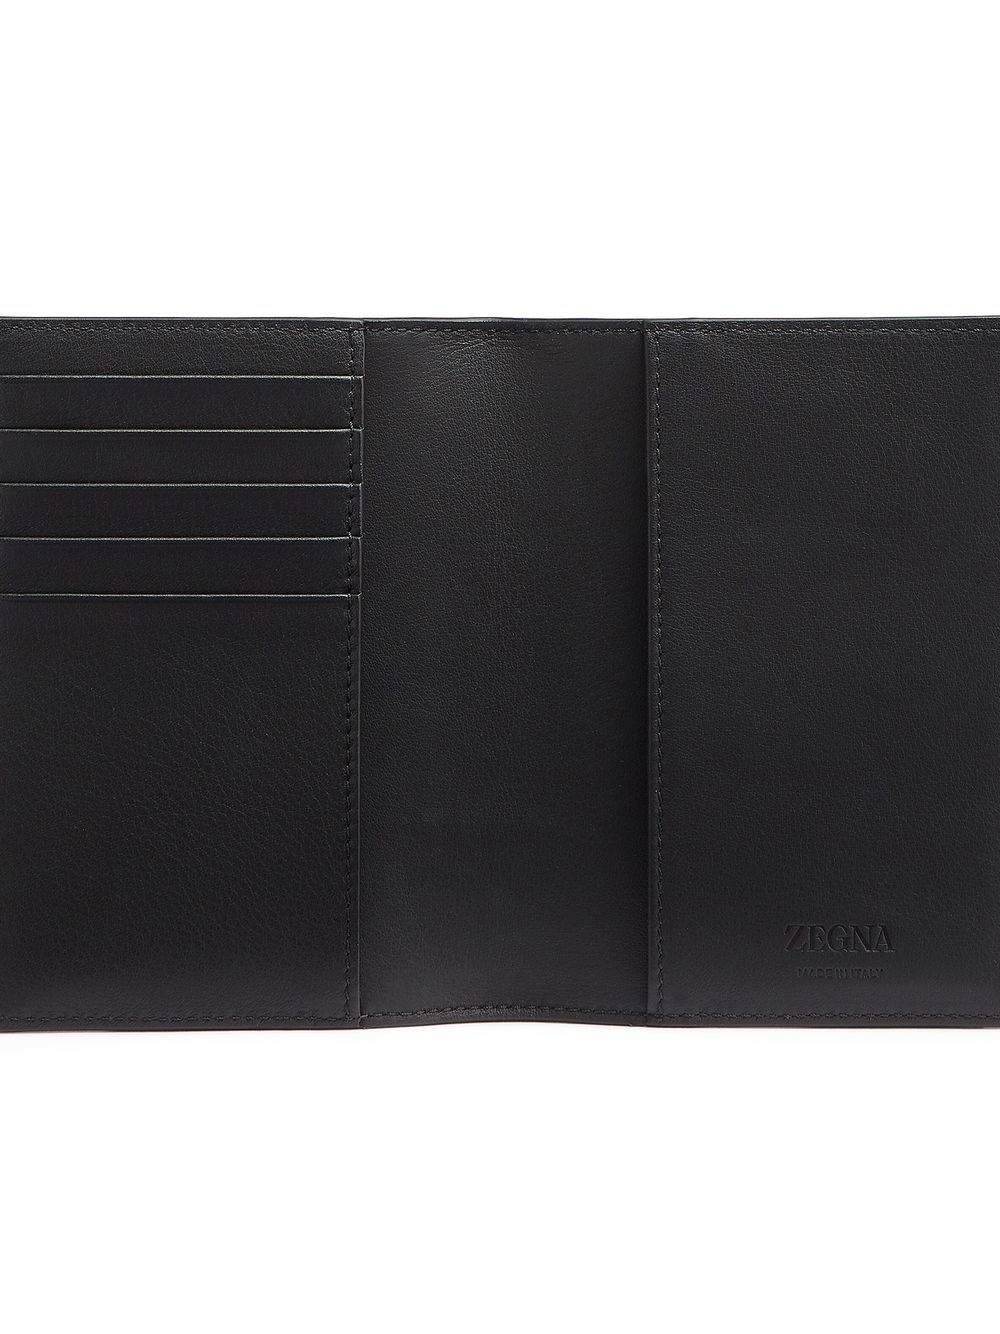 stripe-detail leather passport case - 4